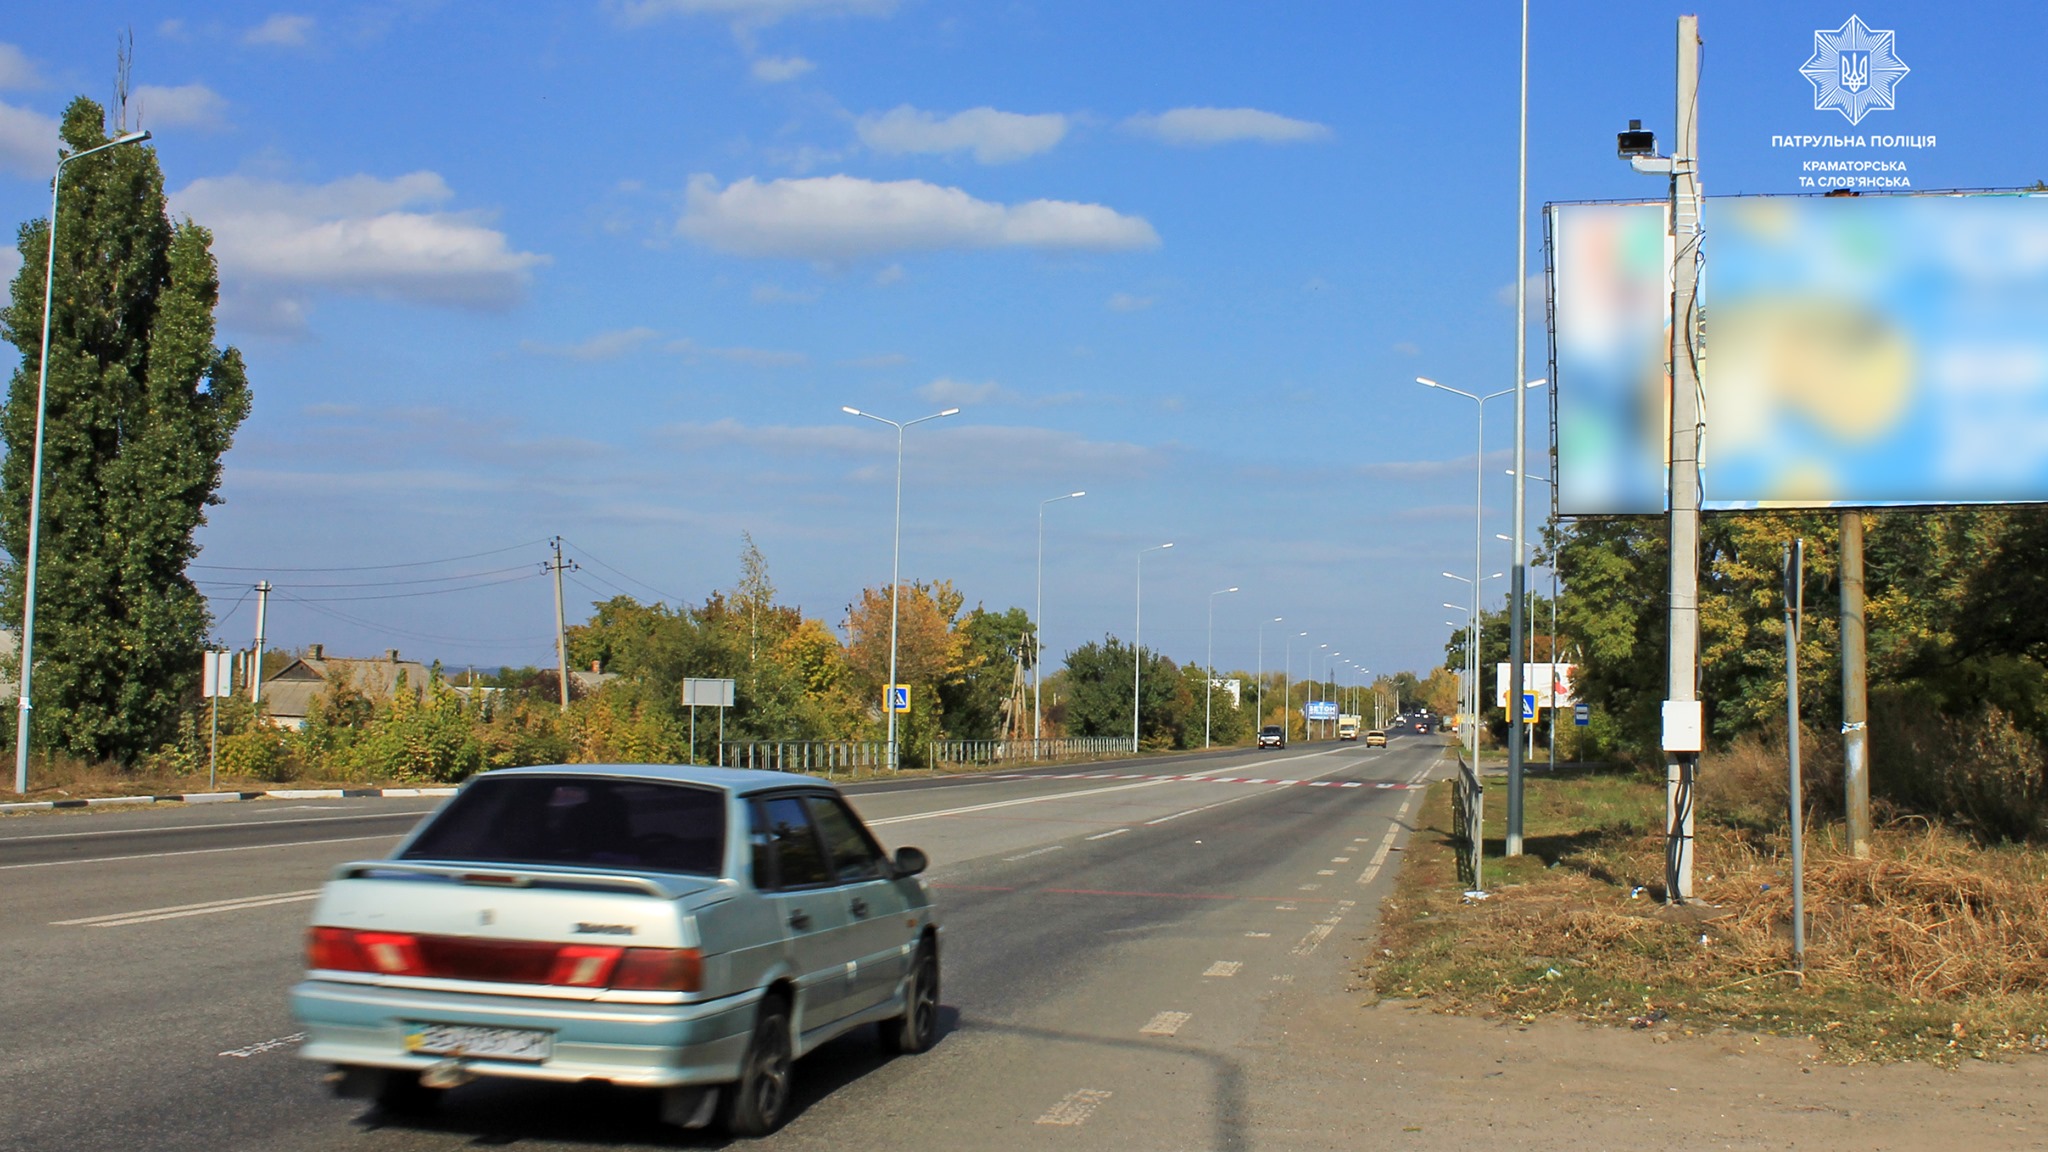 Водителей Донецкой области начнут штрафовать с помощью системы «Каскад». Где установлены камеры?